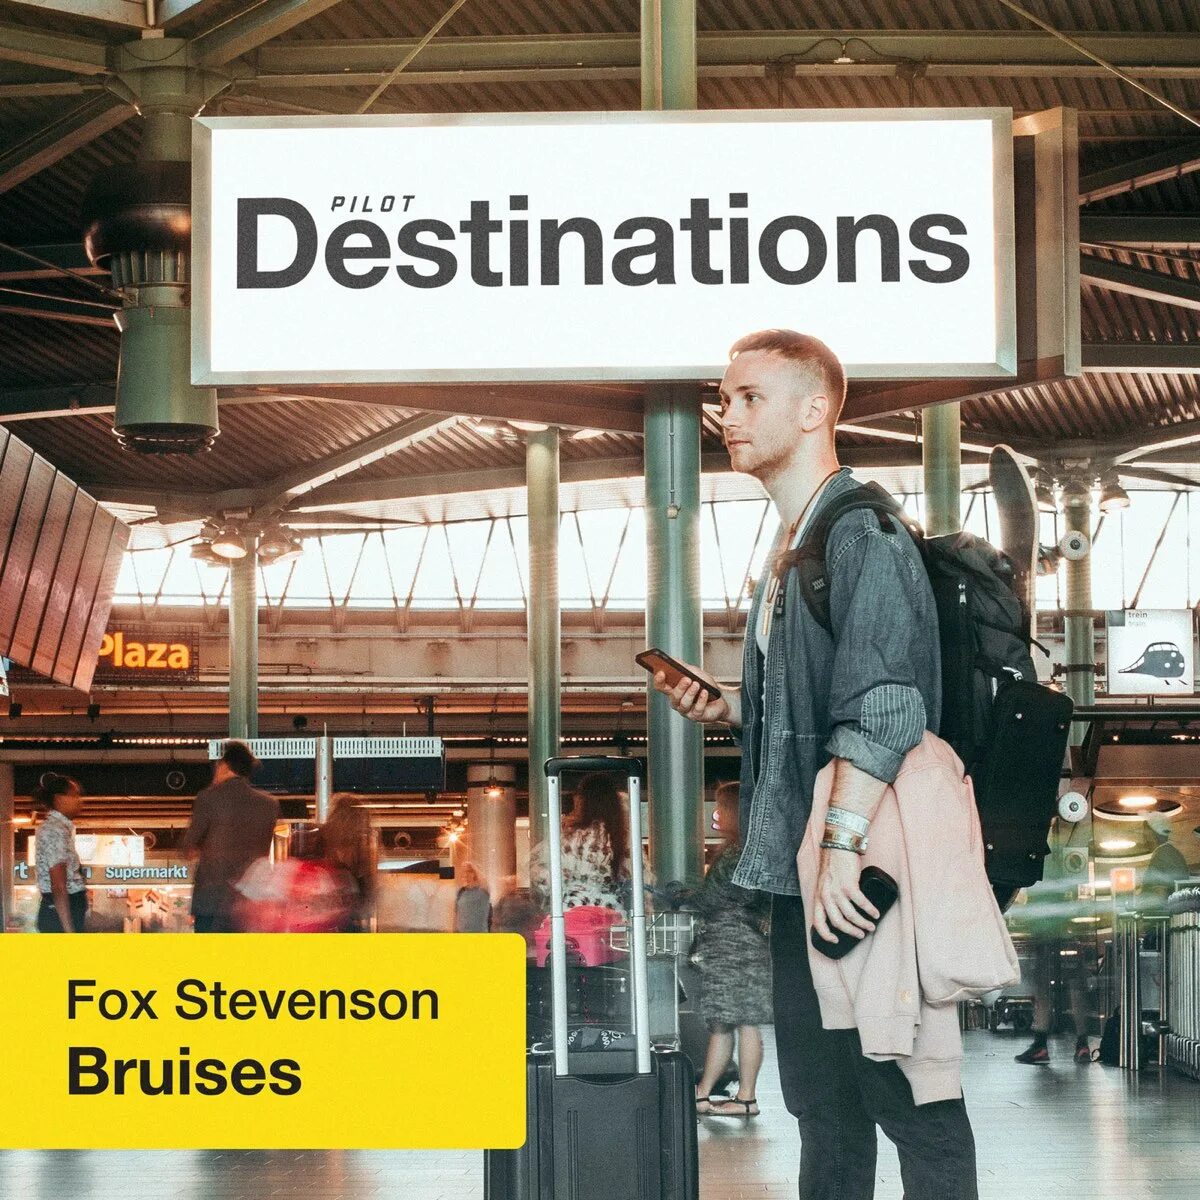 Fox stevenson. Fox Stevenson - bruises (destinations). Fox Stevenson bruises текст.